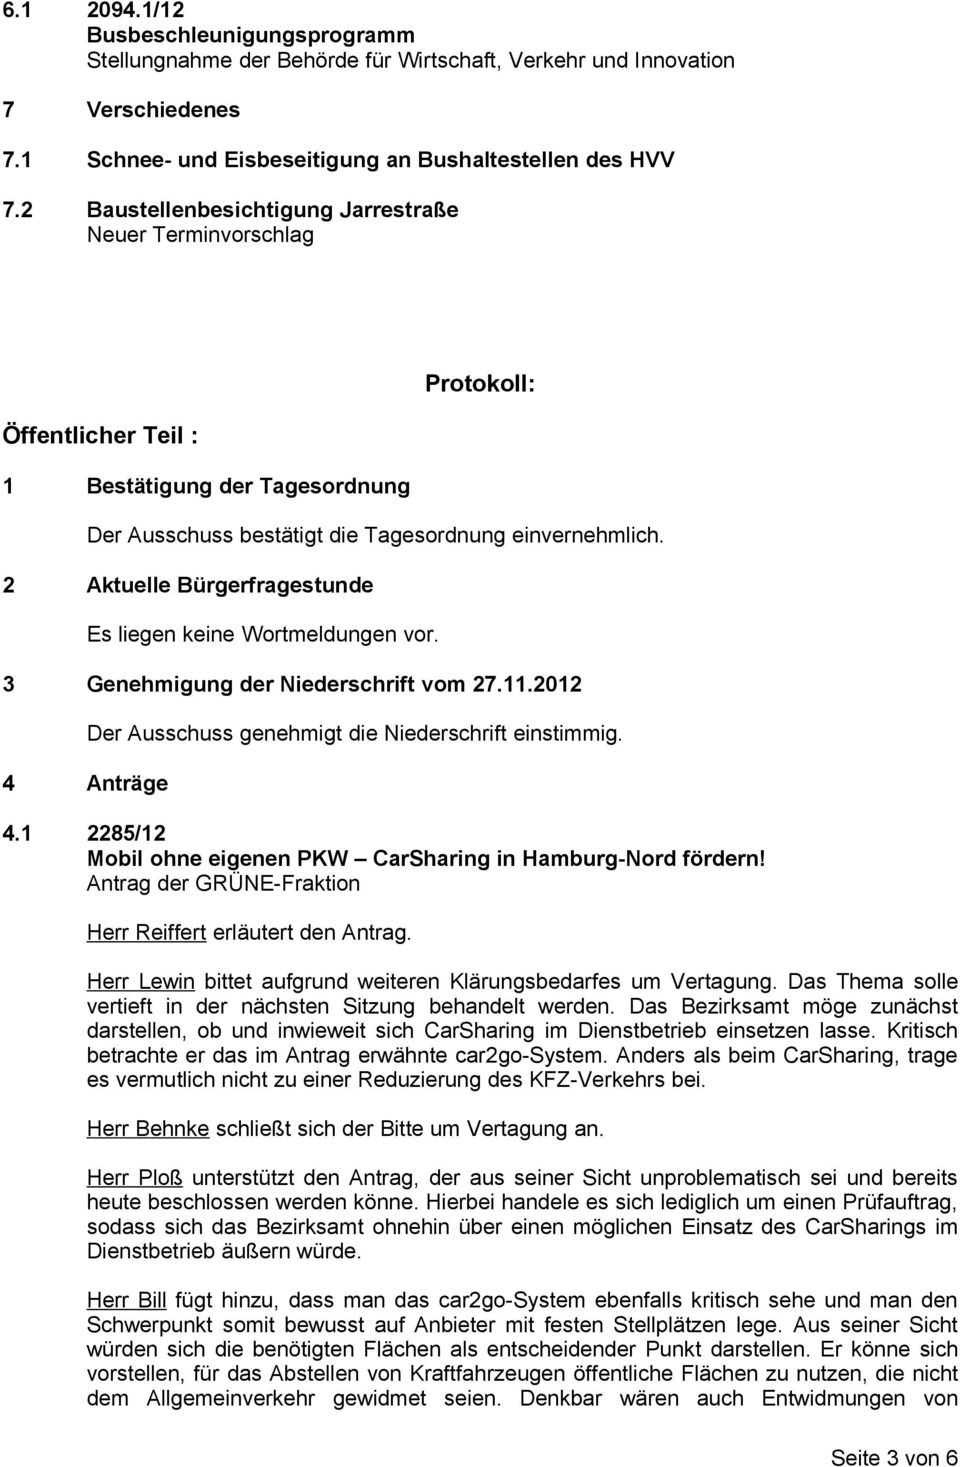 2 Aktuelle Bürgerfragestunde Es liegen keine Wortmeldungen vor. 3 Genehmigung der Niederschrift vom 27.11.2012 4 Anträge Der Ausschuss genehmigt die Niederschrift einstimmig. 4.1 2285/12 Mobil ohne eigenen PKW CarSharing in Hamburg-Nord fördern!